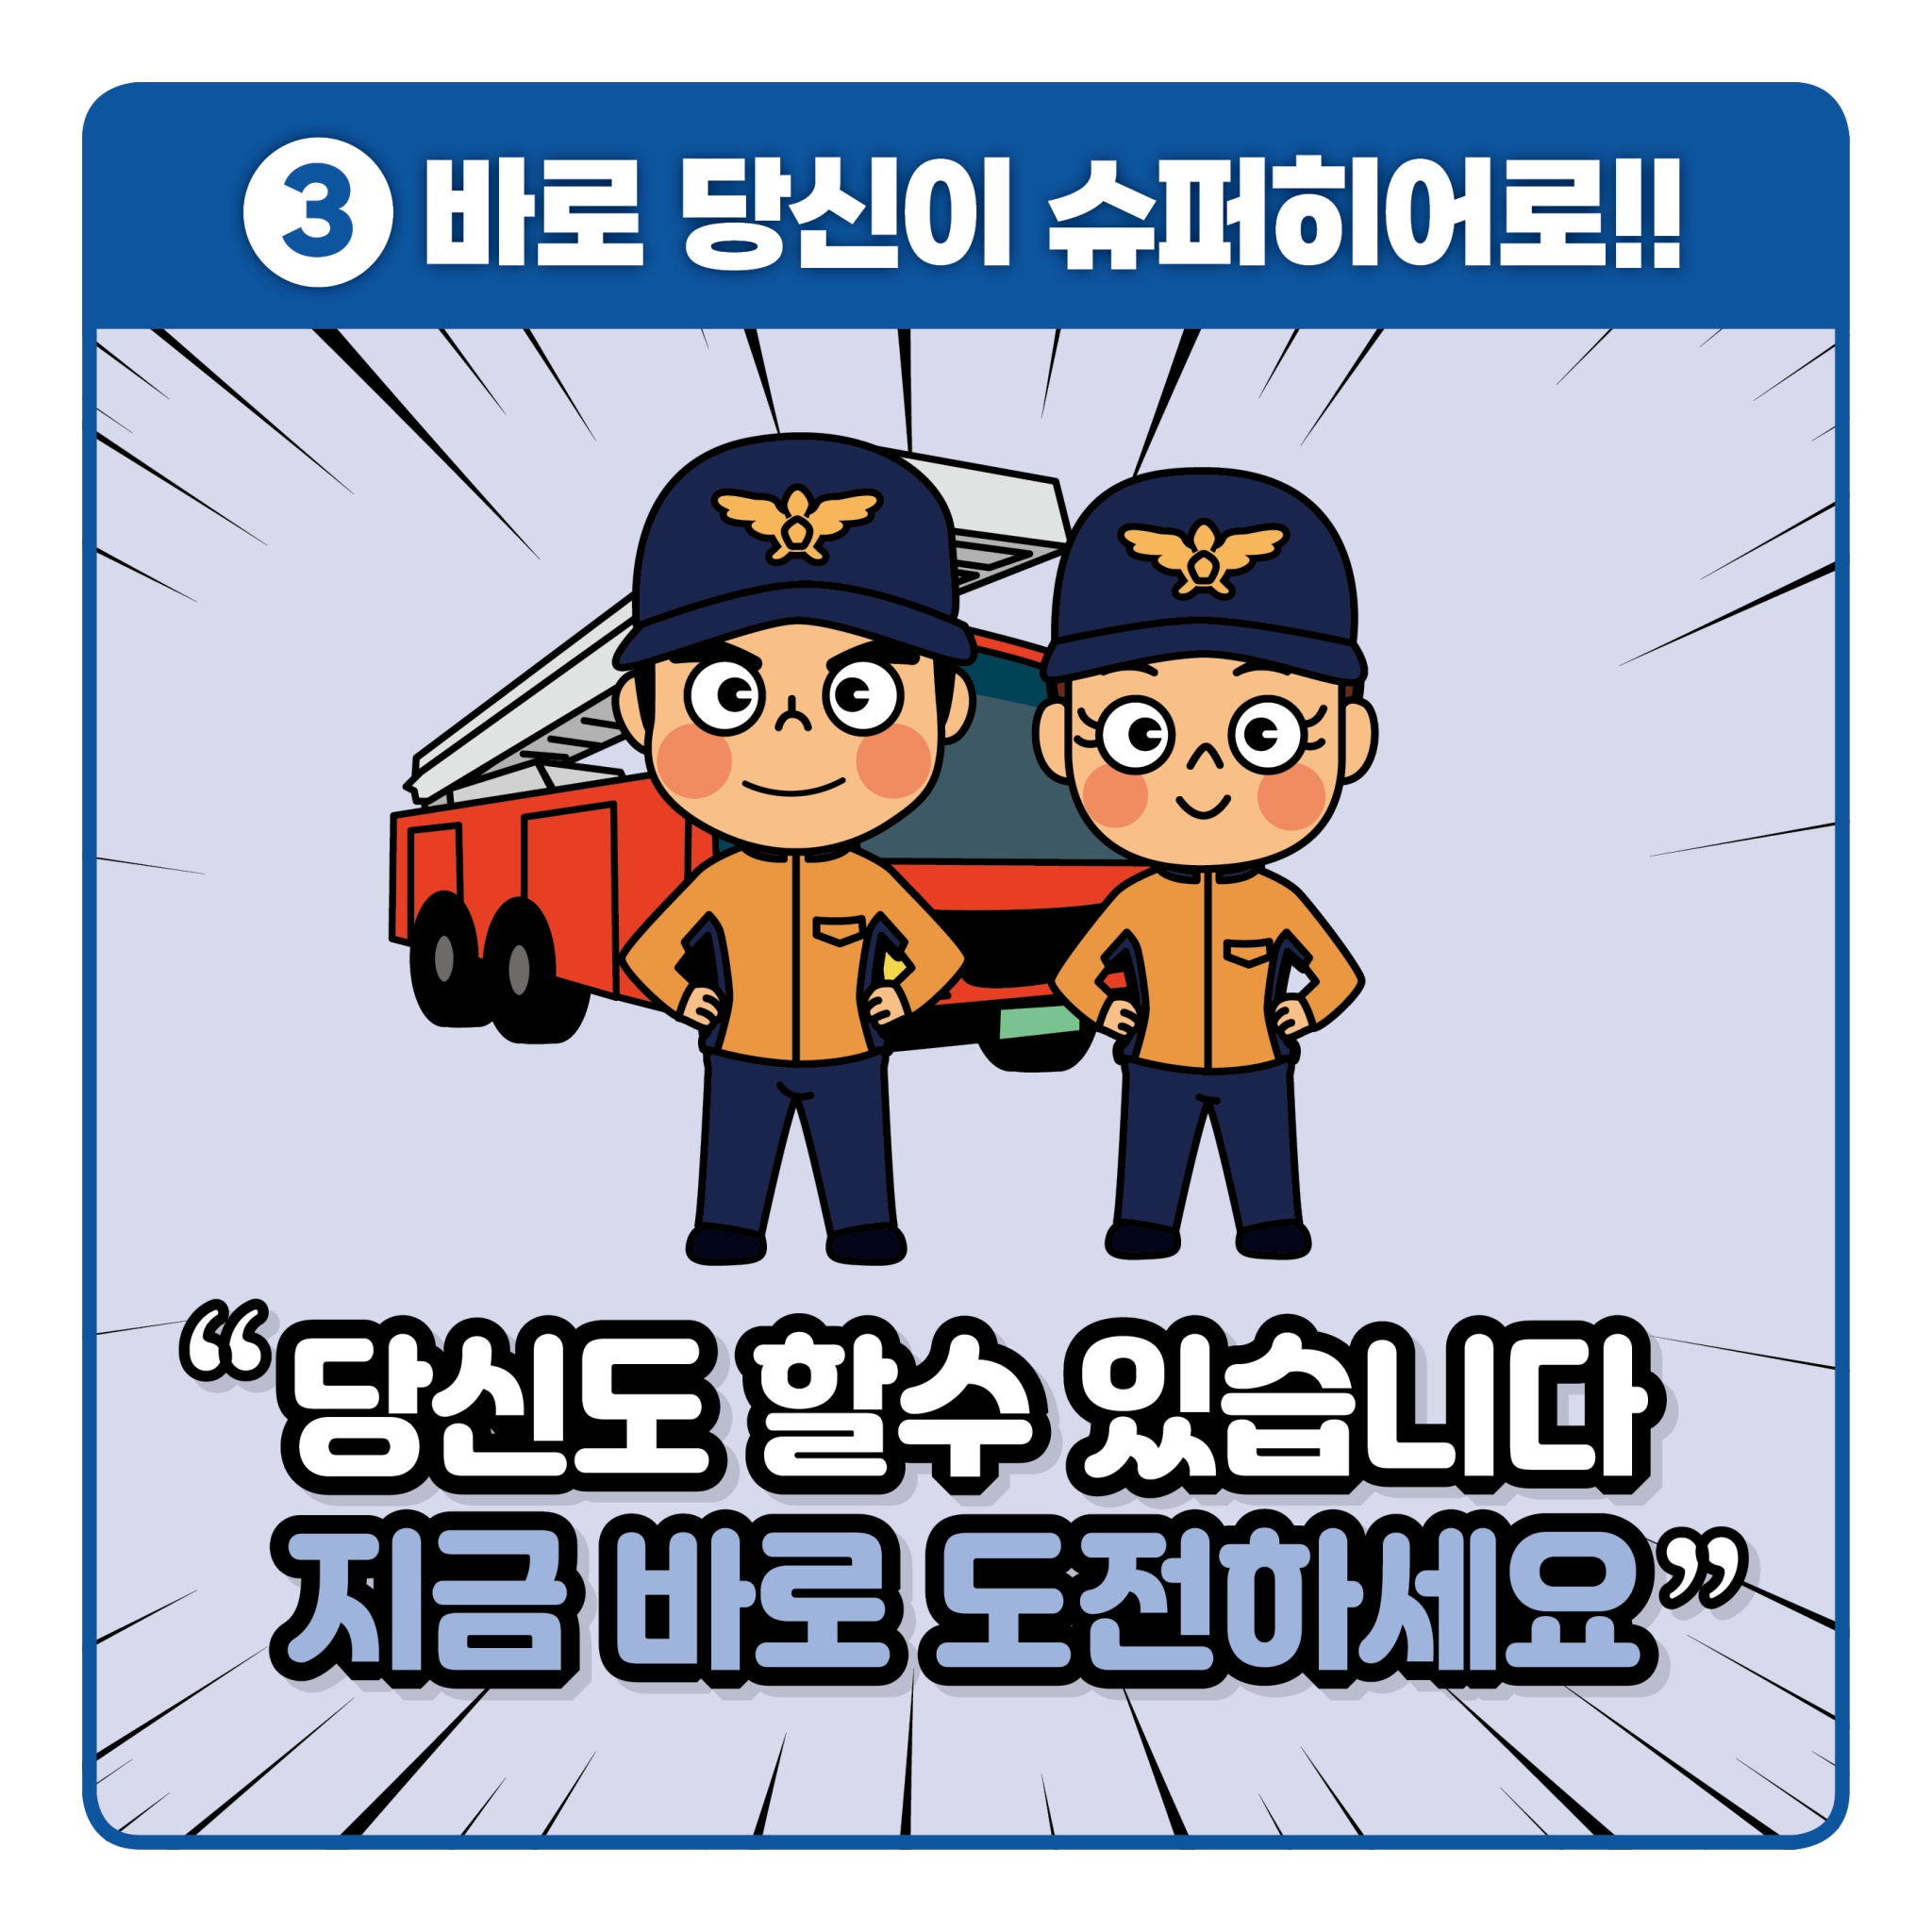 119 응급처치영상 공모전 카드뉴스(파랑)_4